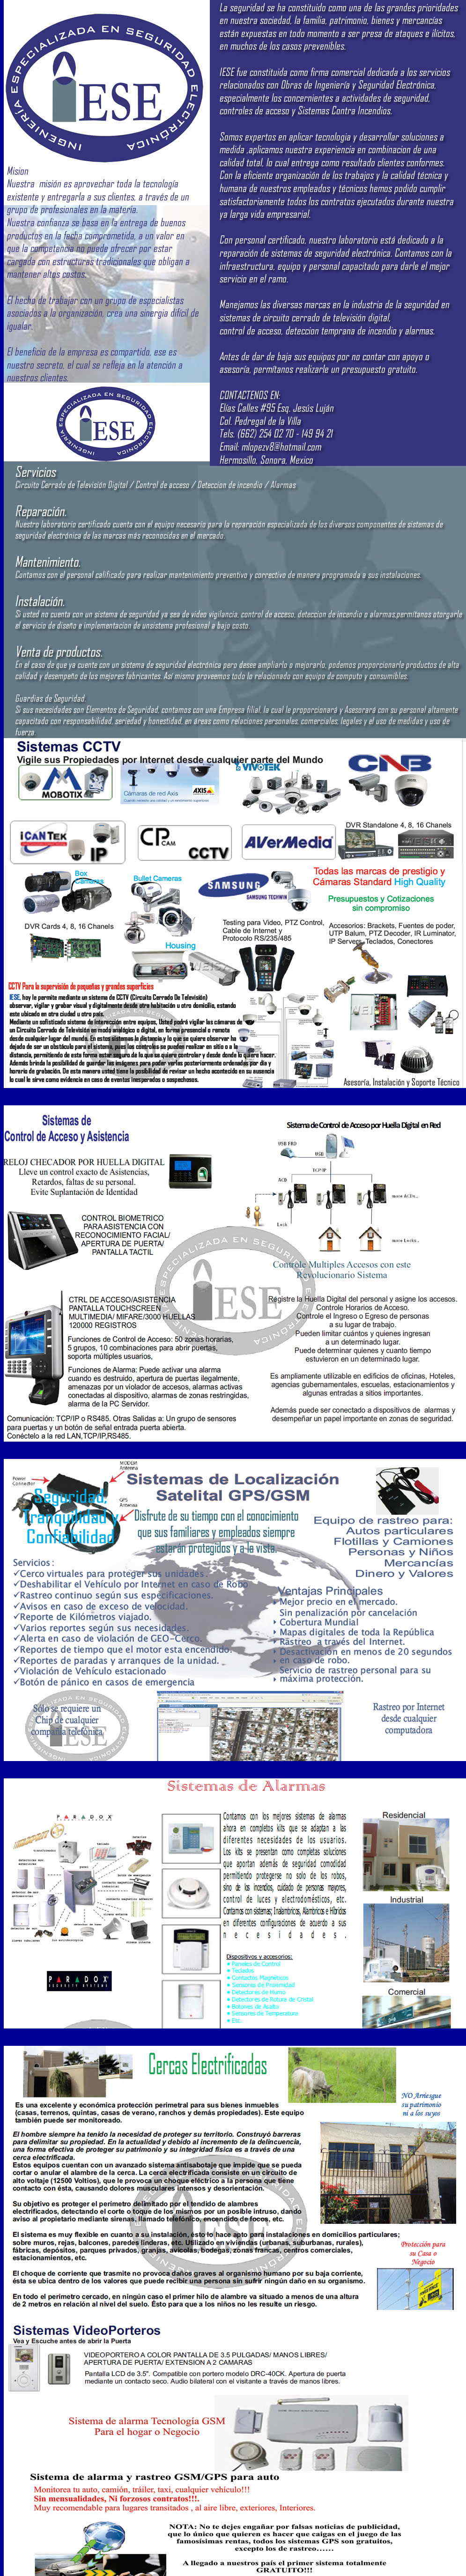 Ingenieria Especializada en Seguridad Electronica-Integracion equipos de Seguridad Electronica como Circuito Cerrado de TV CCTV, Control de Acceso, Localizadores Satelitales GPS, Alarmas GSM.